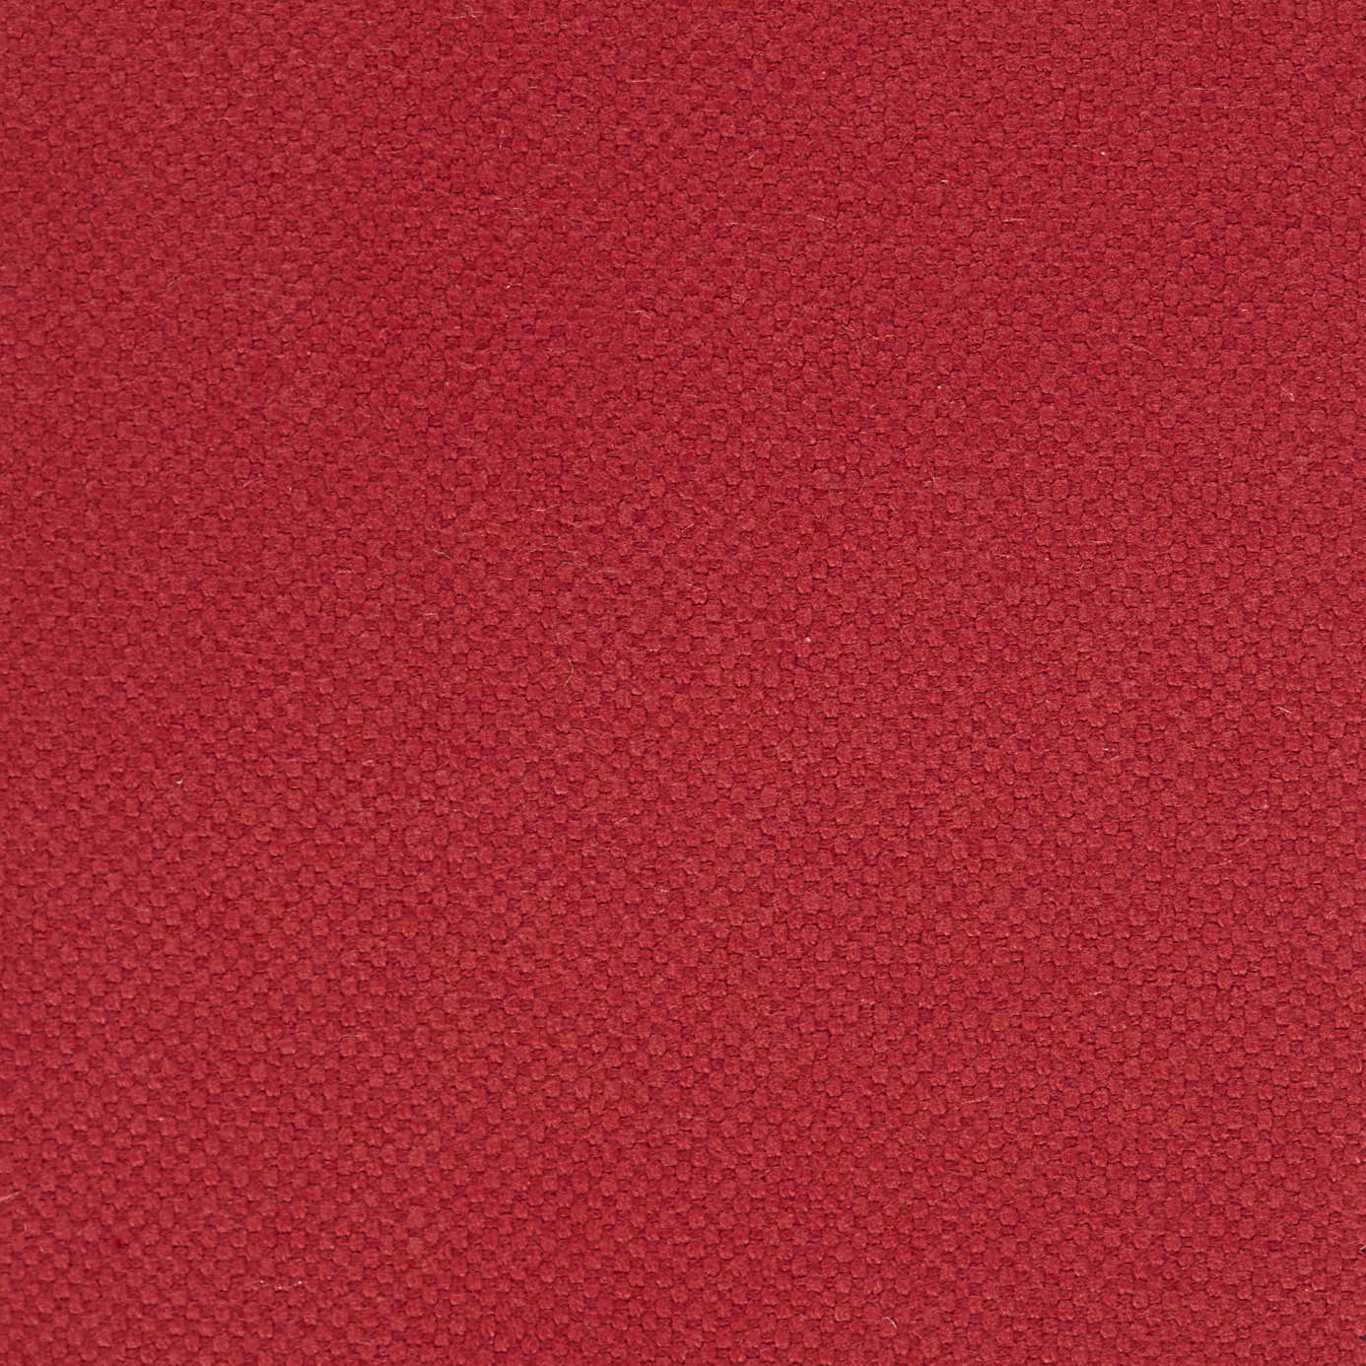 Quadrant Ruby Fabric by HAR